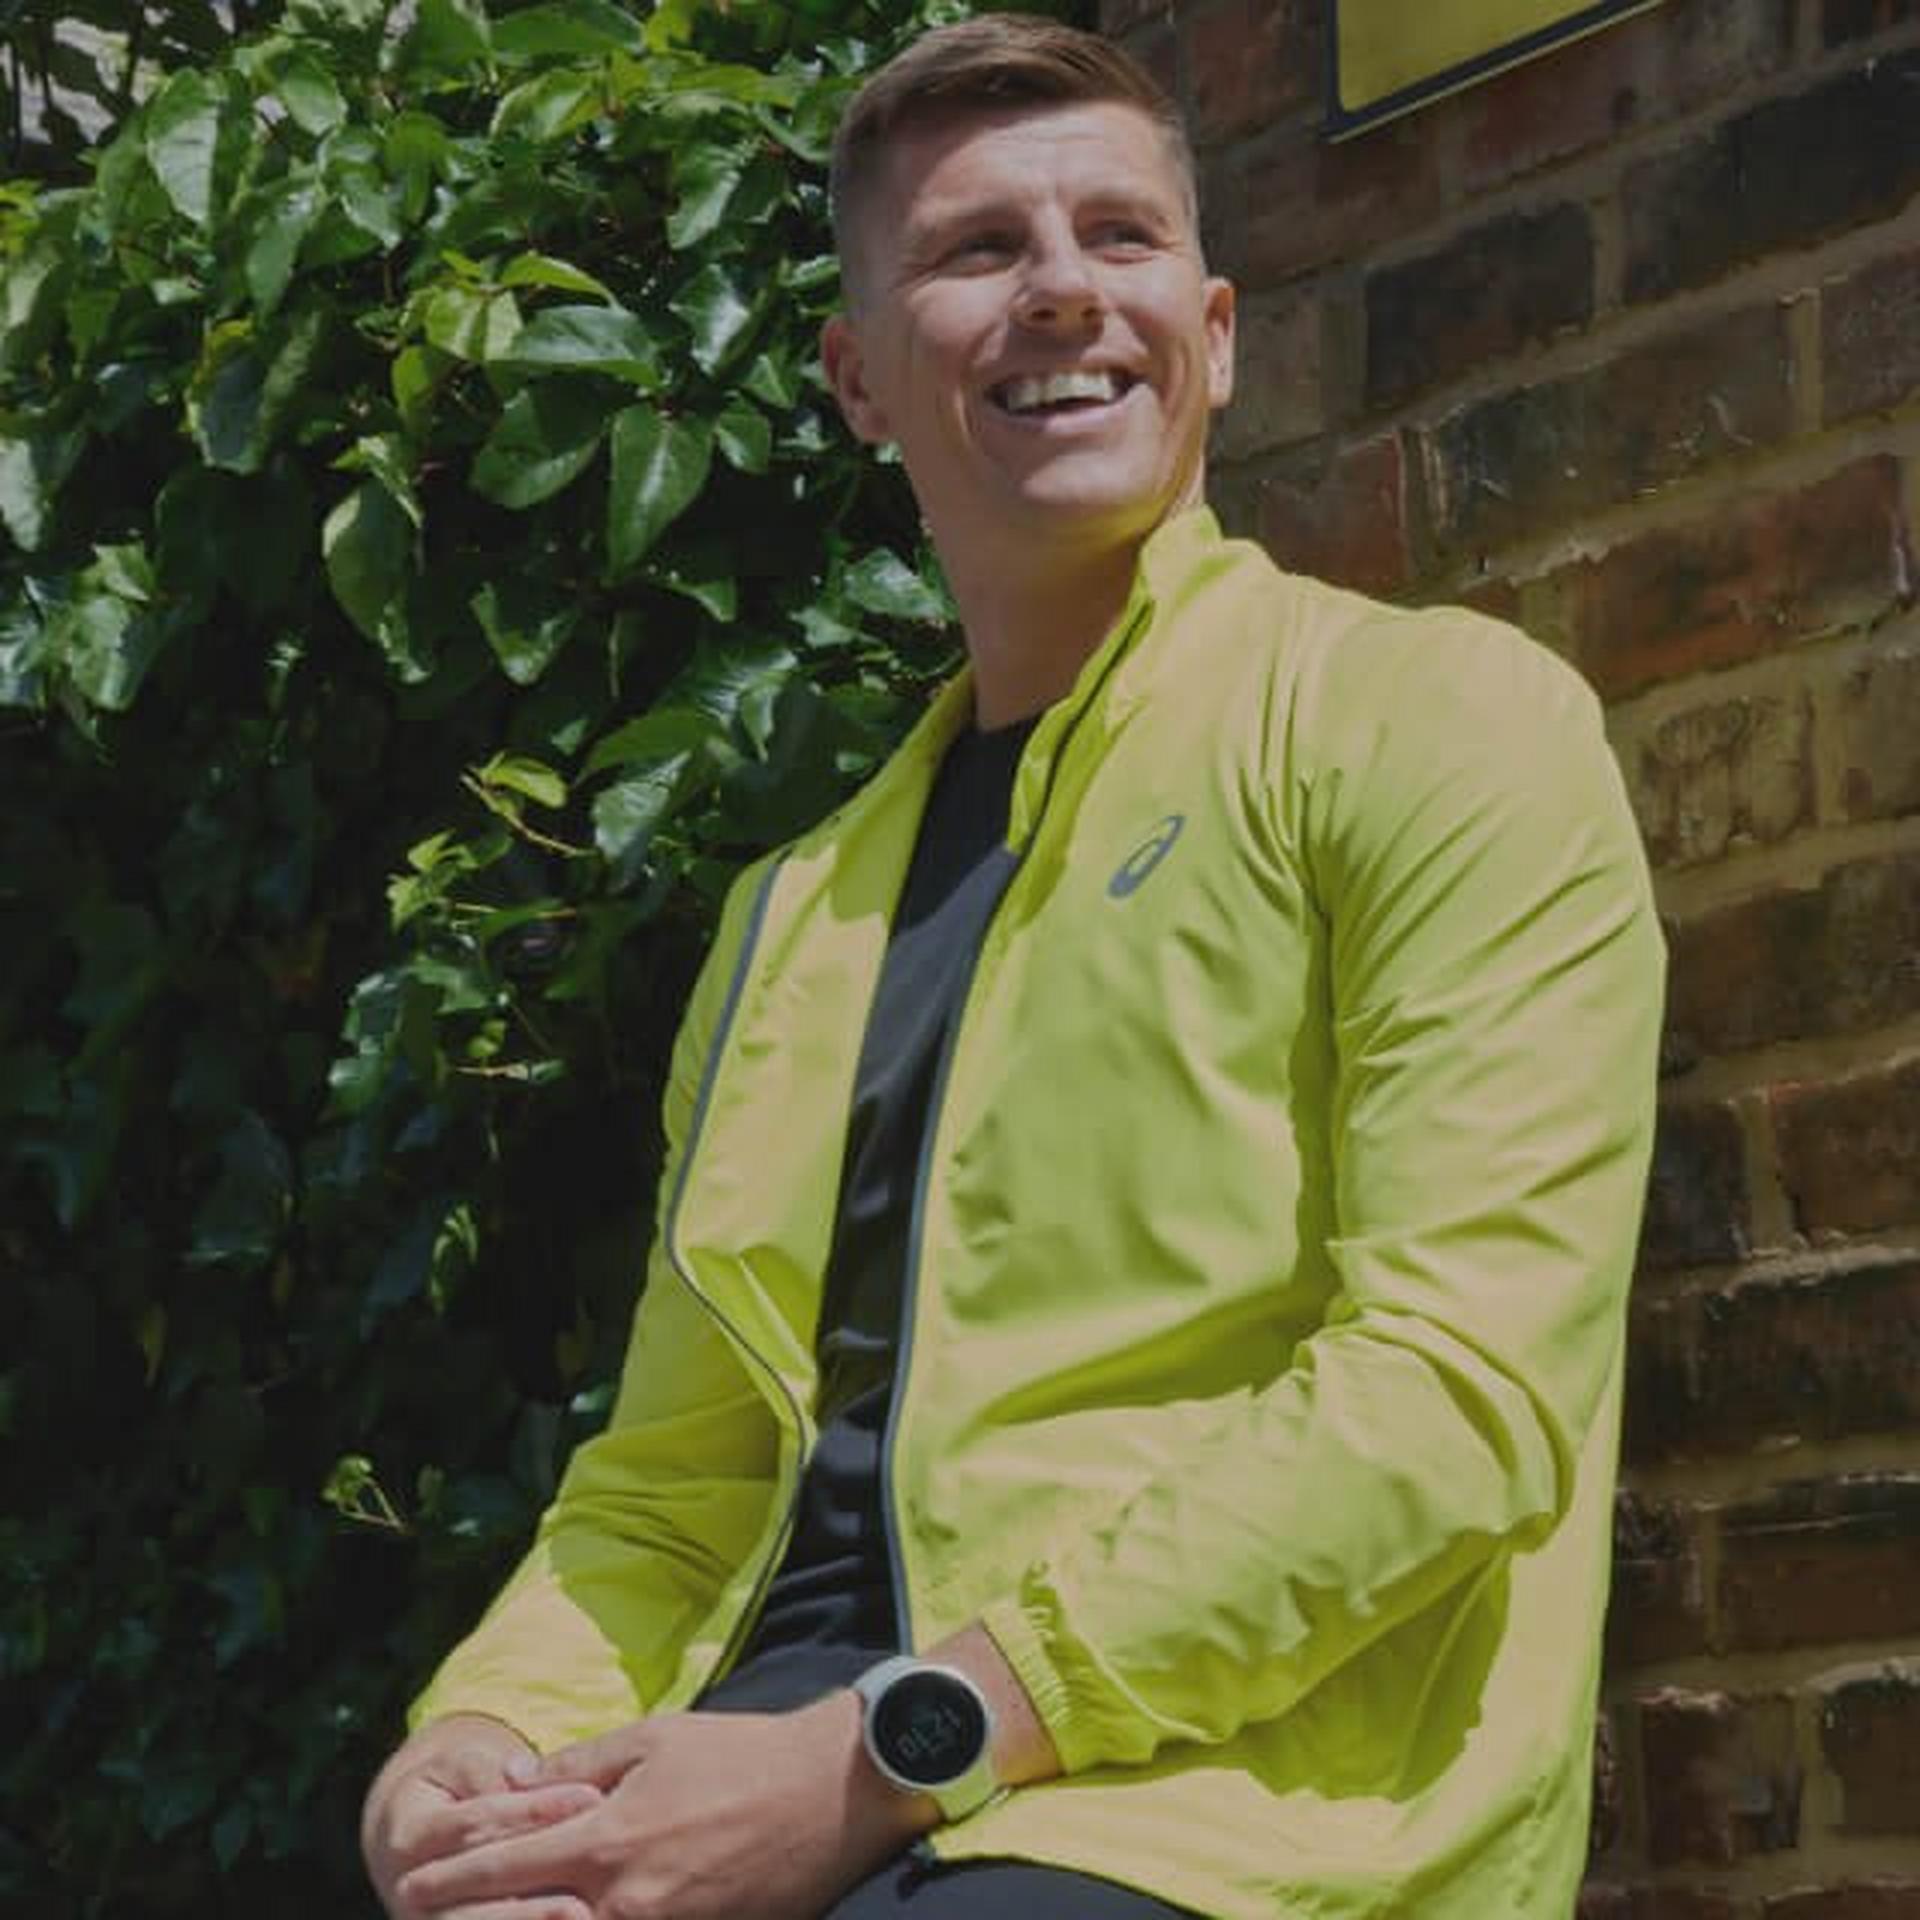 Man smiling while wearing a green Asics running jacket